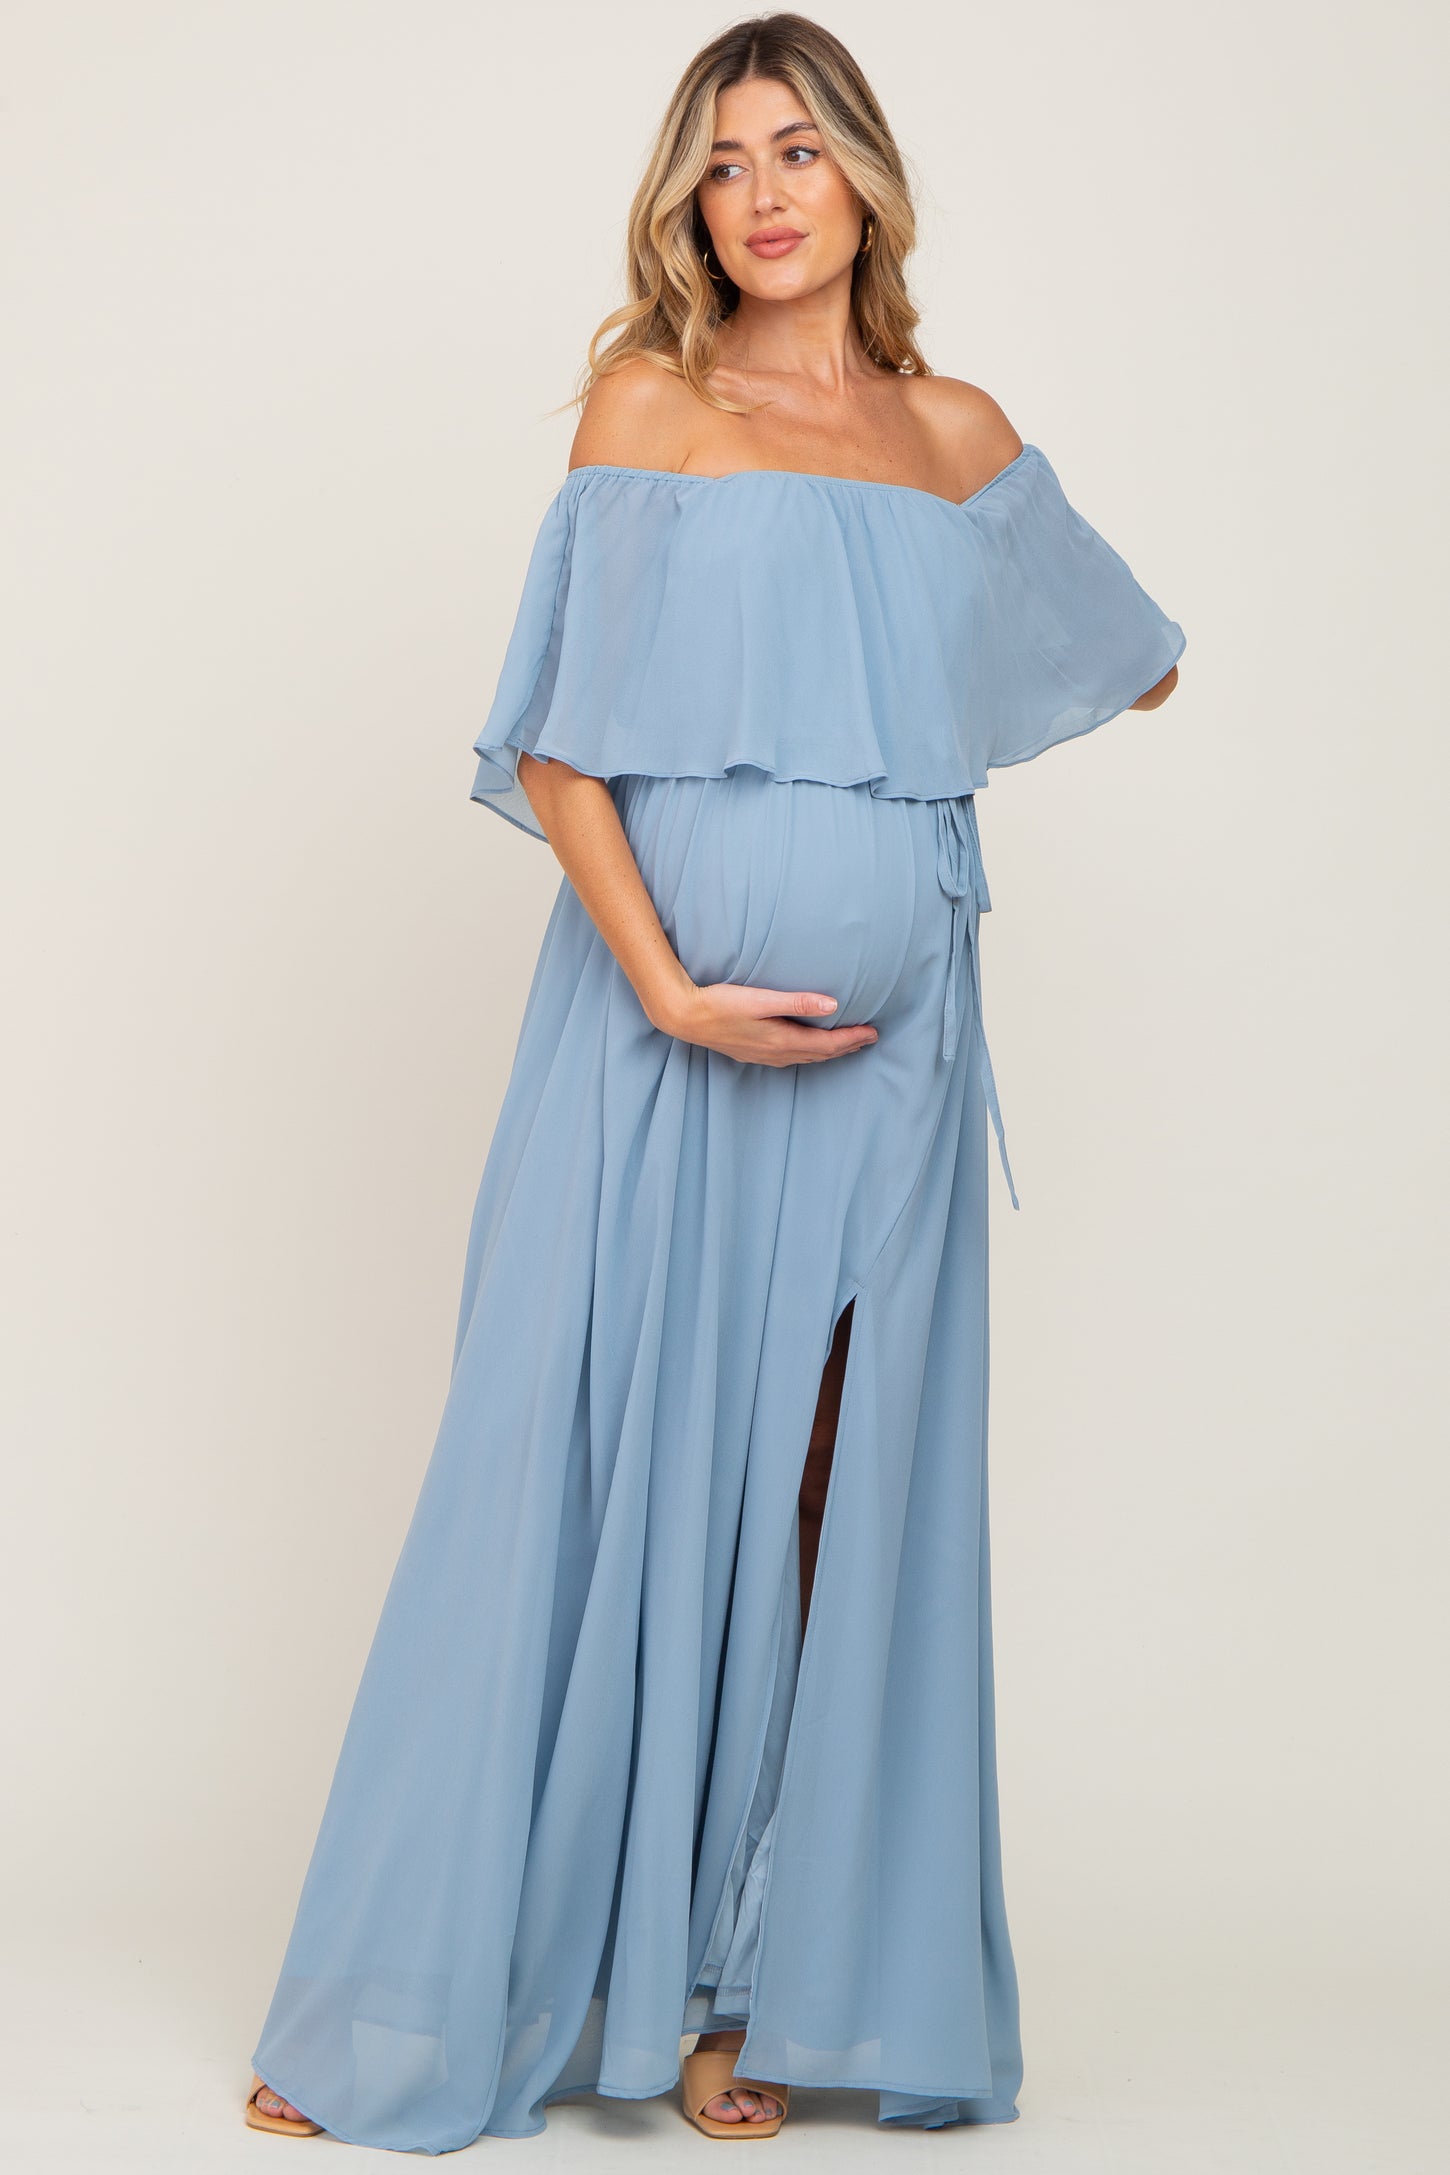 Light Blue Chiffon Off Shoulder Maternity Maxi Dress– PinkBlush